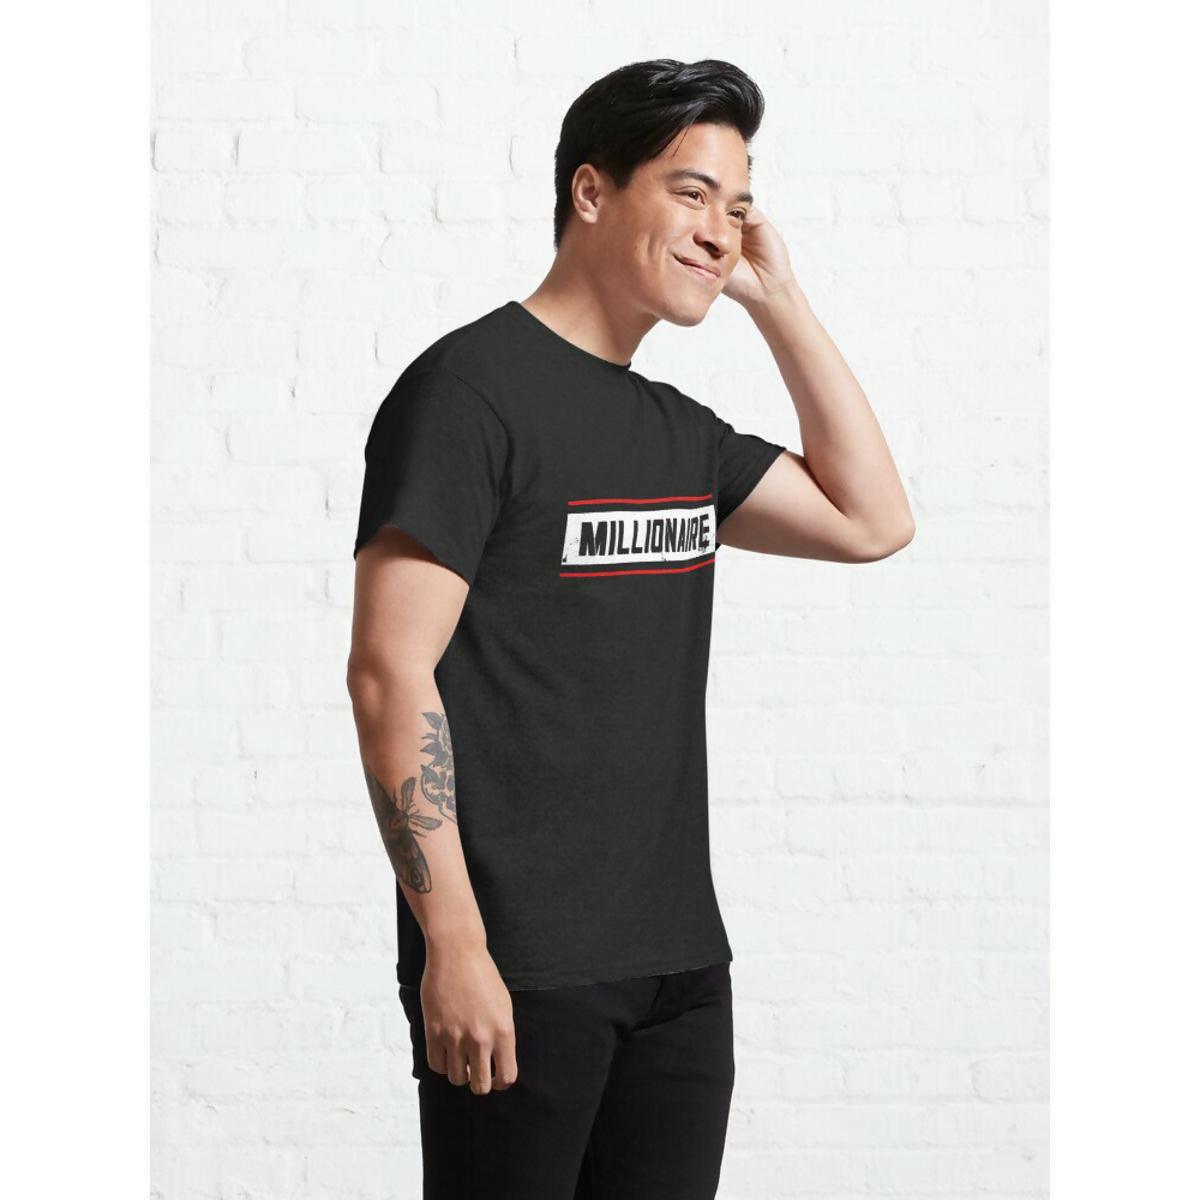 Khanani's Millionaire T-shirt for men - ValueBox